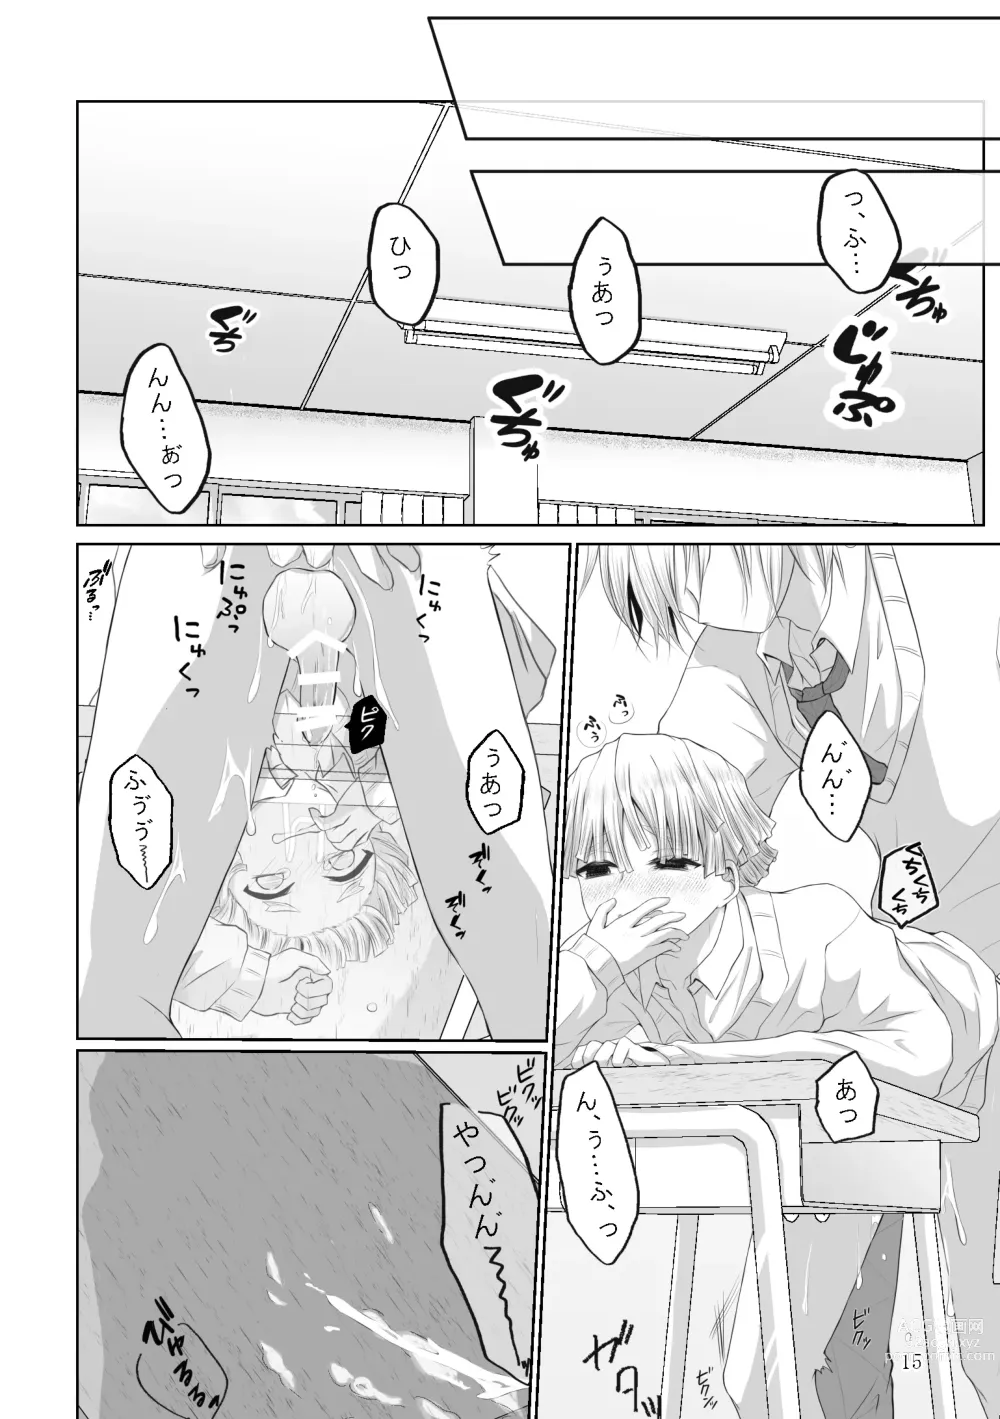 Page 43 of doujinshi Kore wa Play Desu!